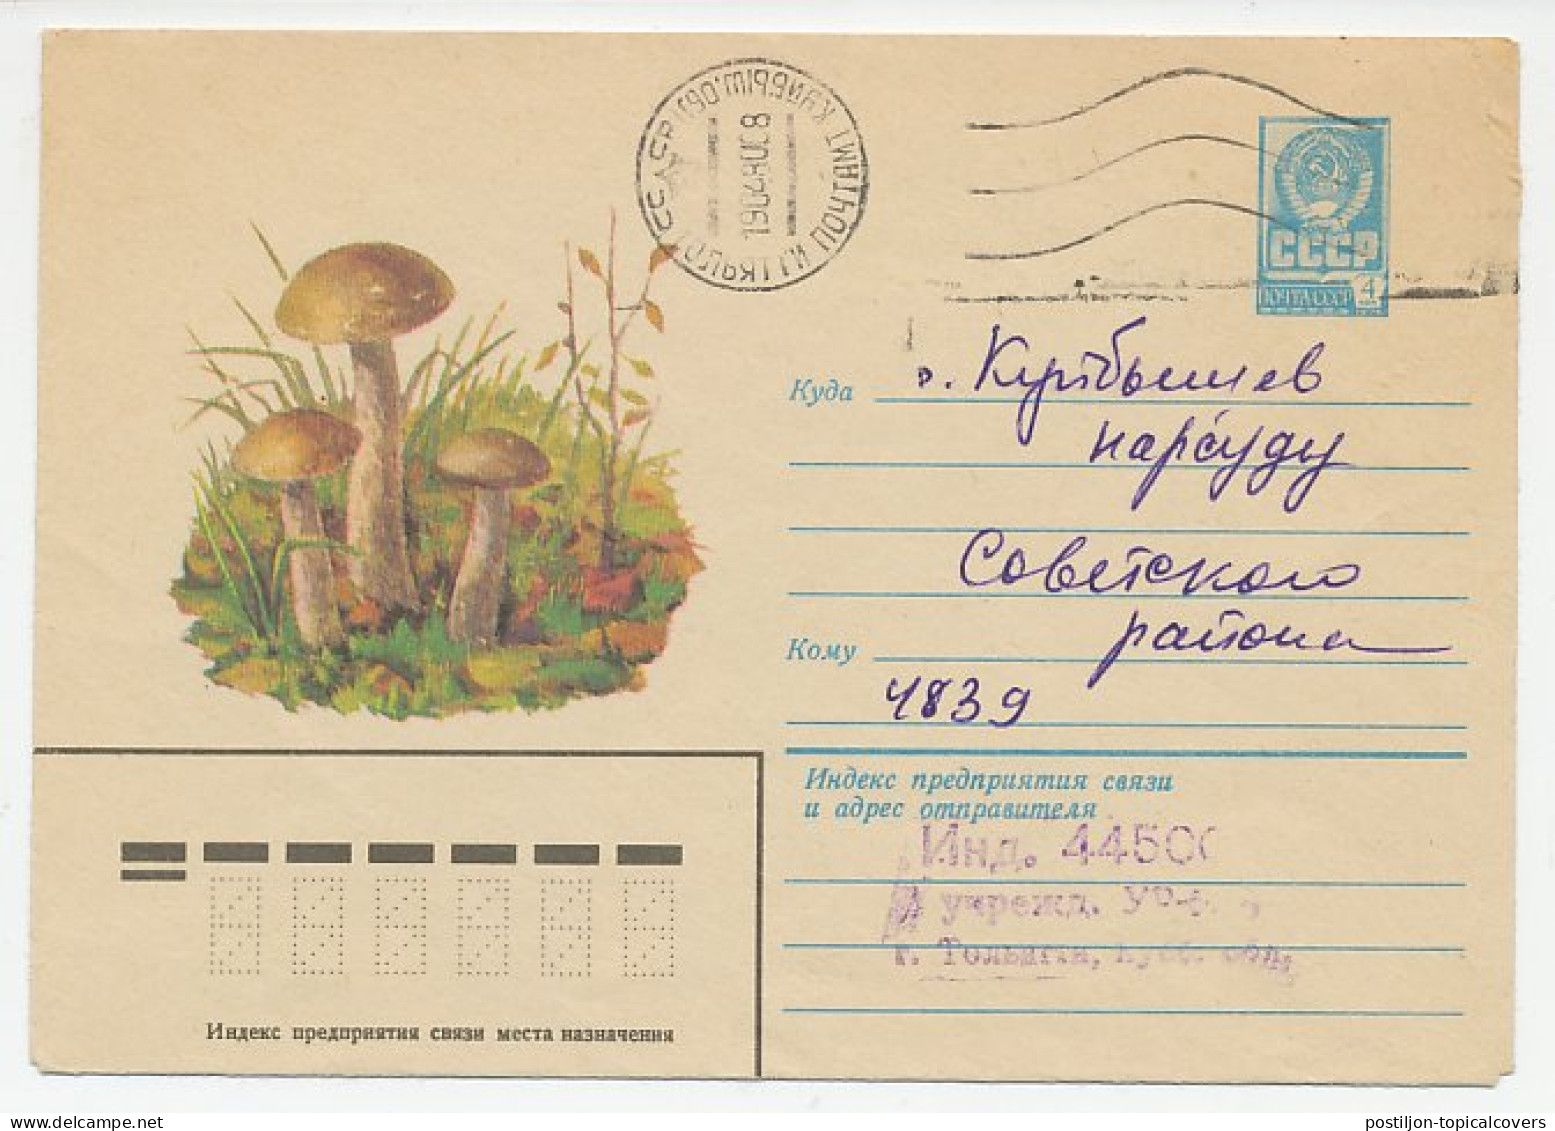 Postal Stationery Soviet Union 1980 Mushroom - Mushrooms